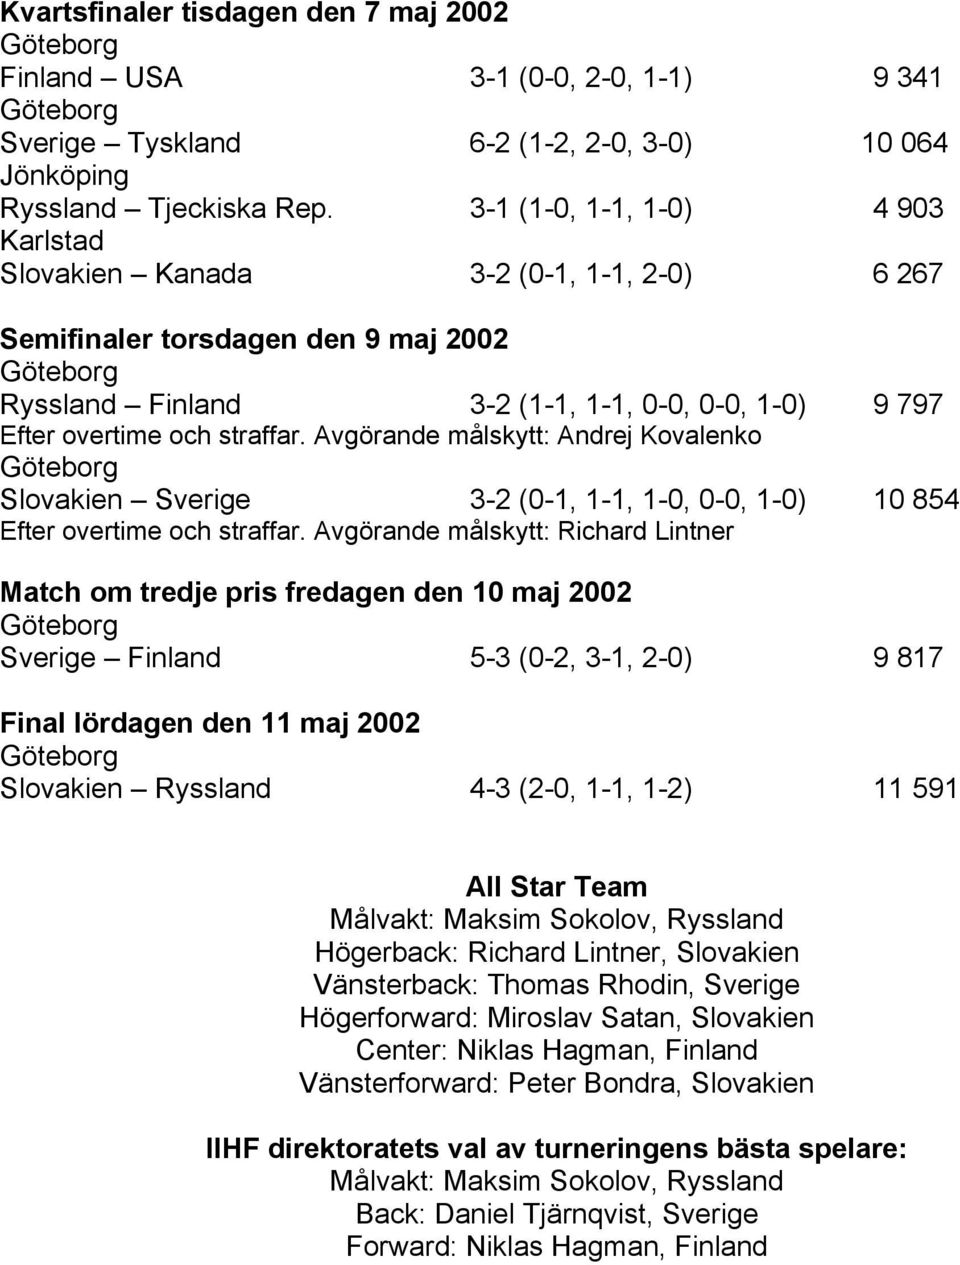 Avgörande målskytt: Andrej Kovalenko Slovakien Sverige 3-2 (0-1, 1-1, 1-0, 0-0, 1-0) 10 854 Efter overtime och straffar.